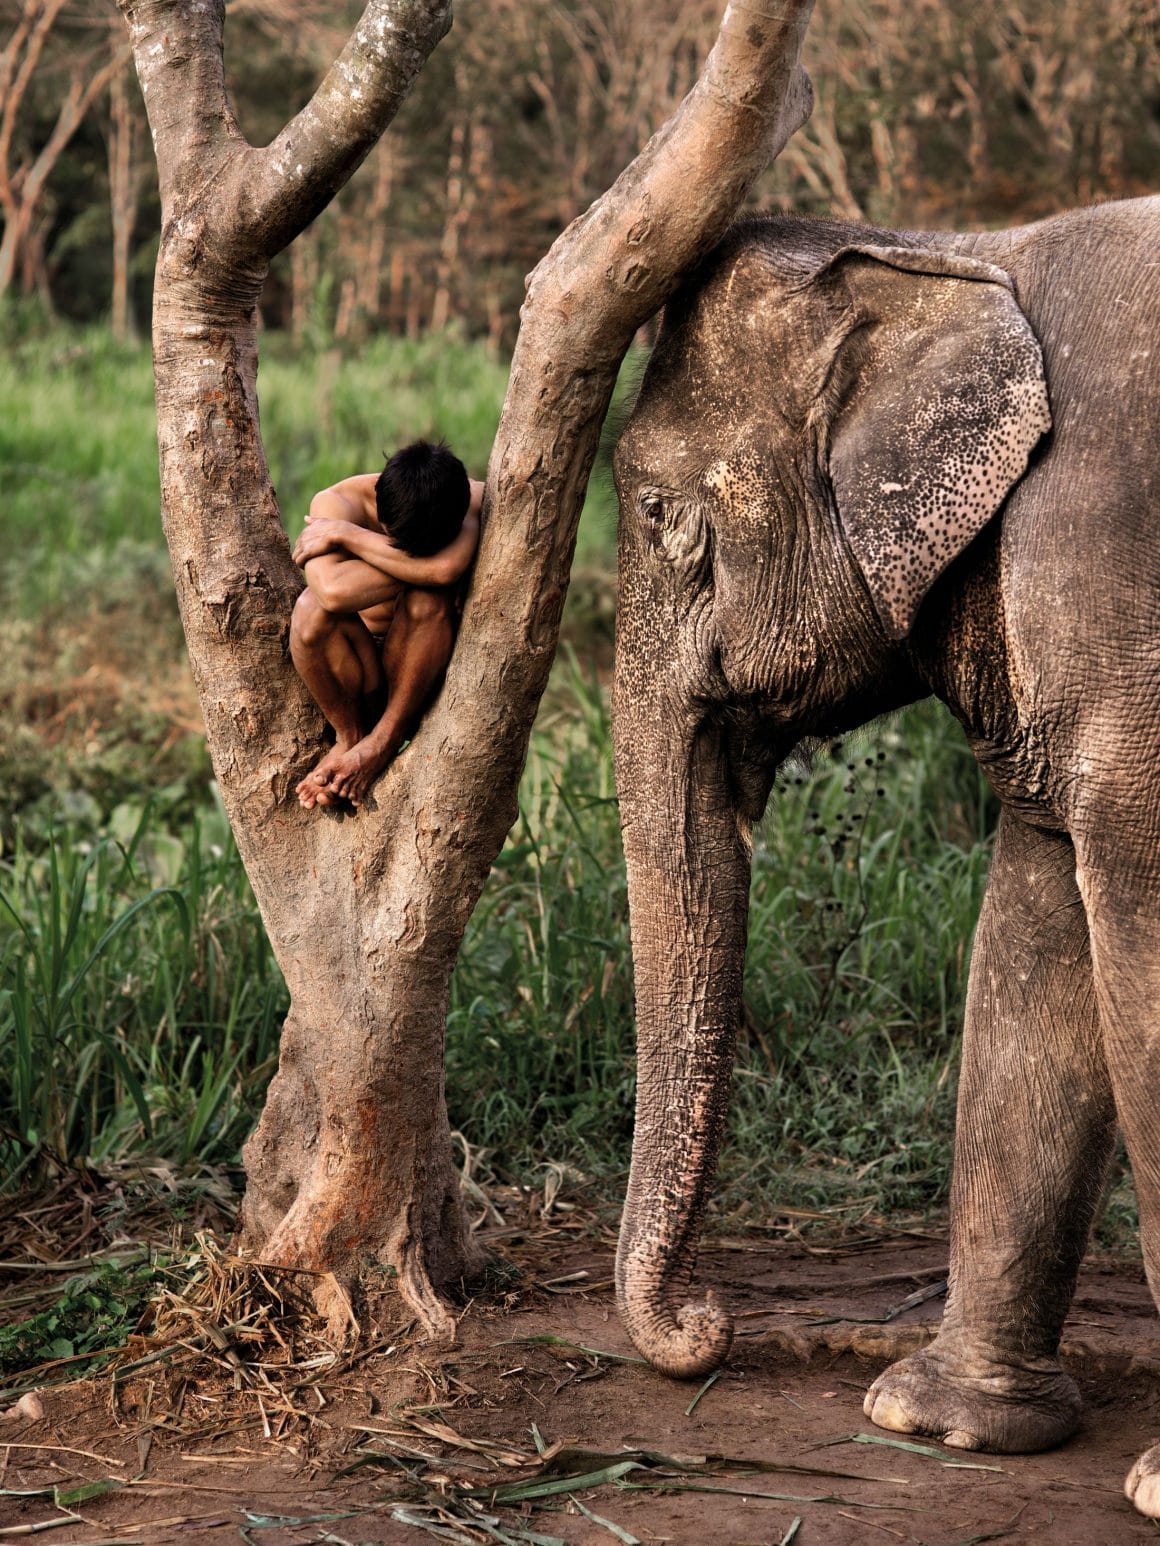 Steve McCurry, "Animals". Photographies publiées aux Editions Taschen, Thaïlande, 2010.